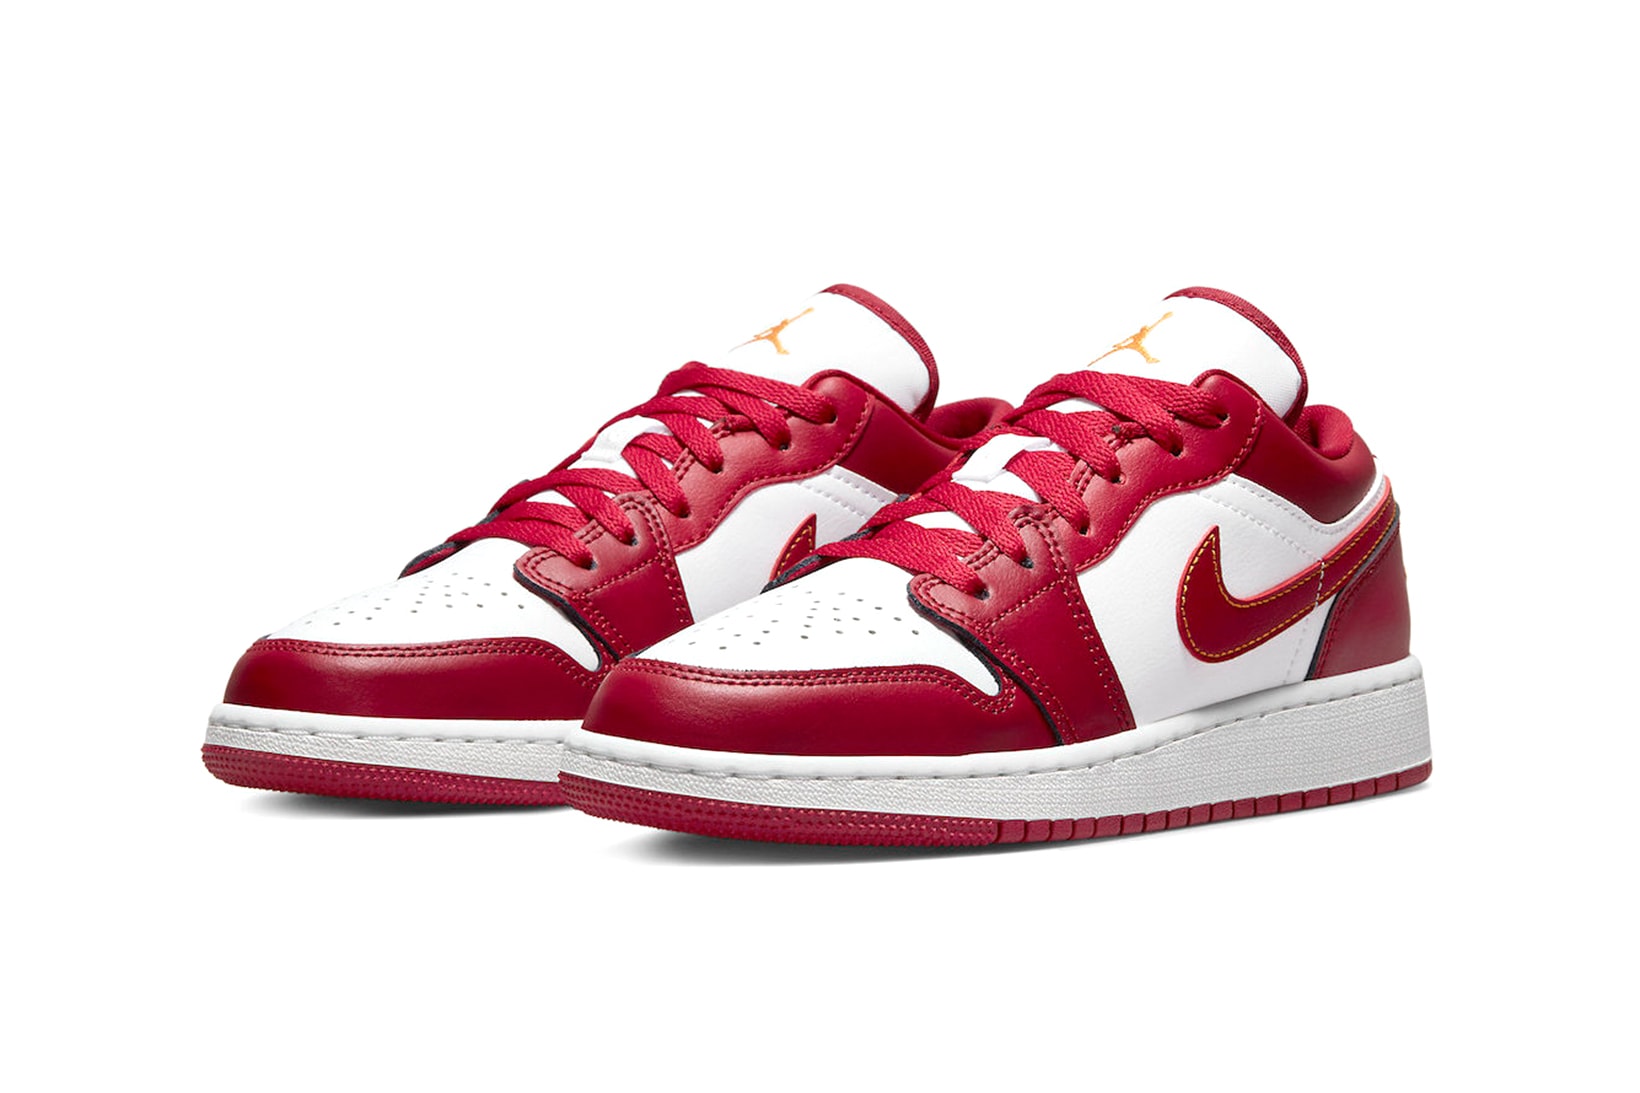 Nike Air Jordan 1 Low Sneakers Kids Cardinal Red Angled View